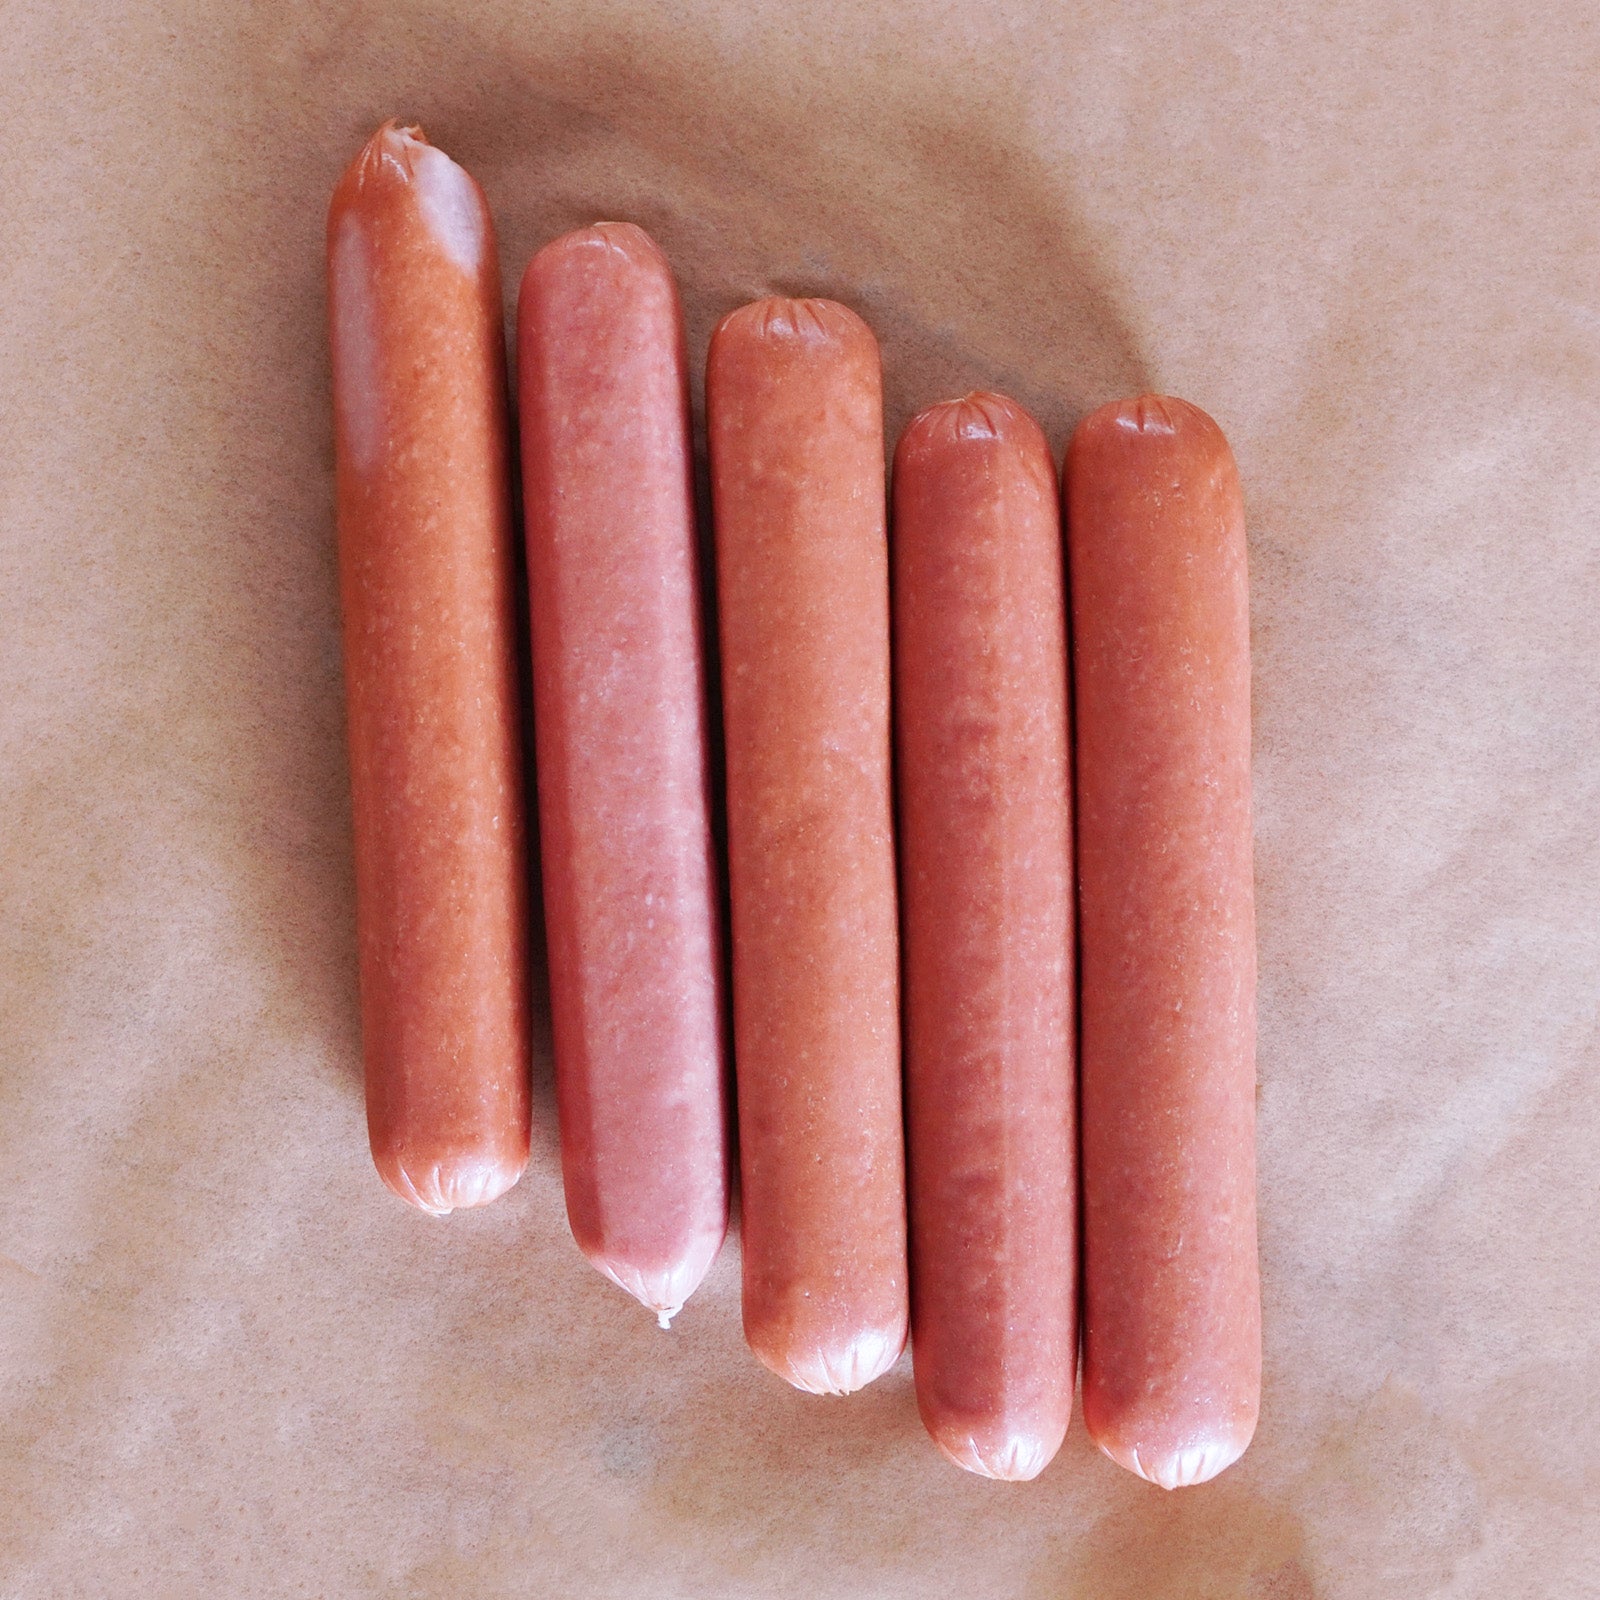 無添加・保存料不使用 放牧 黒豚 ホットドッグ ソーセージ (5本) ホライズンファームズ